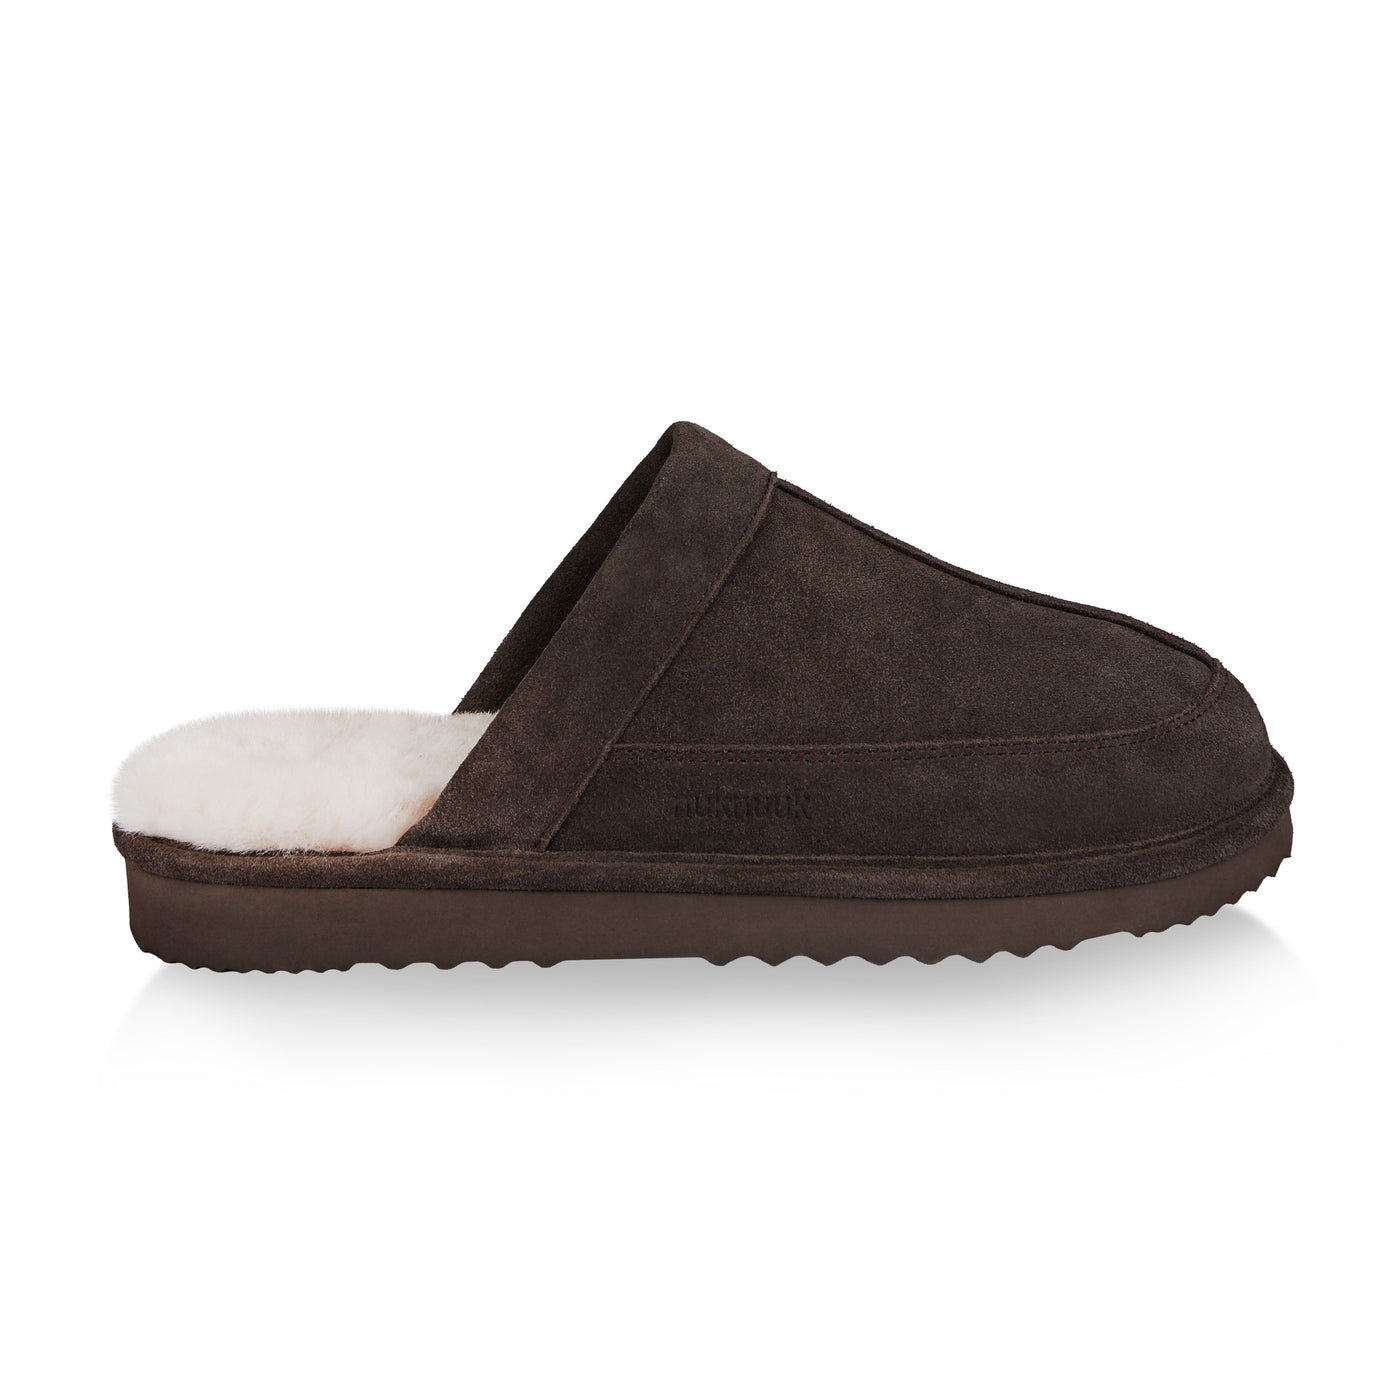 Luc men's slipper (Dark Brown)